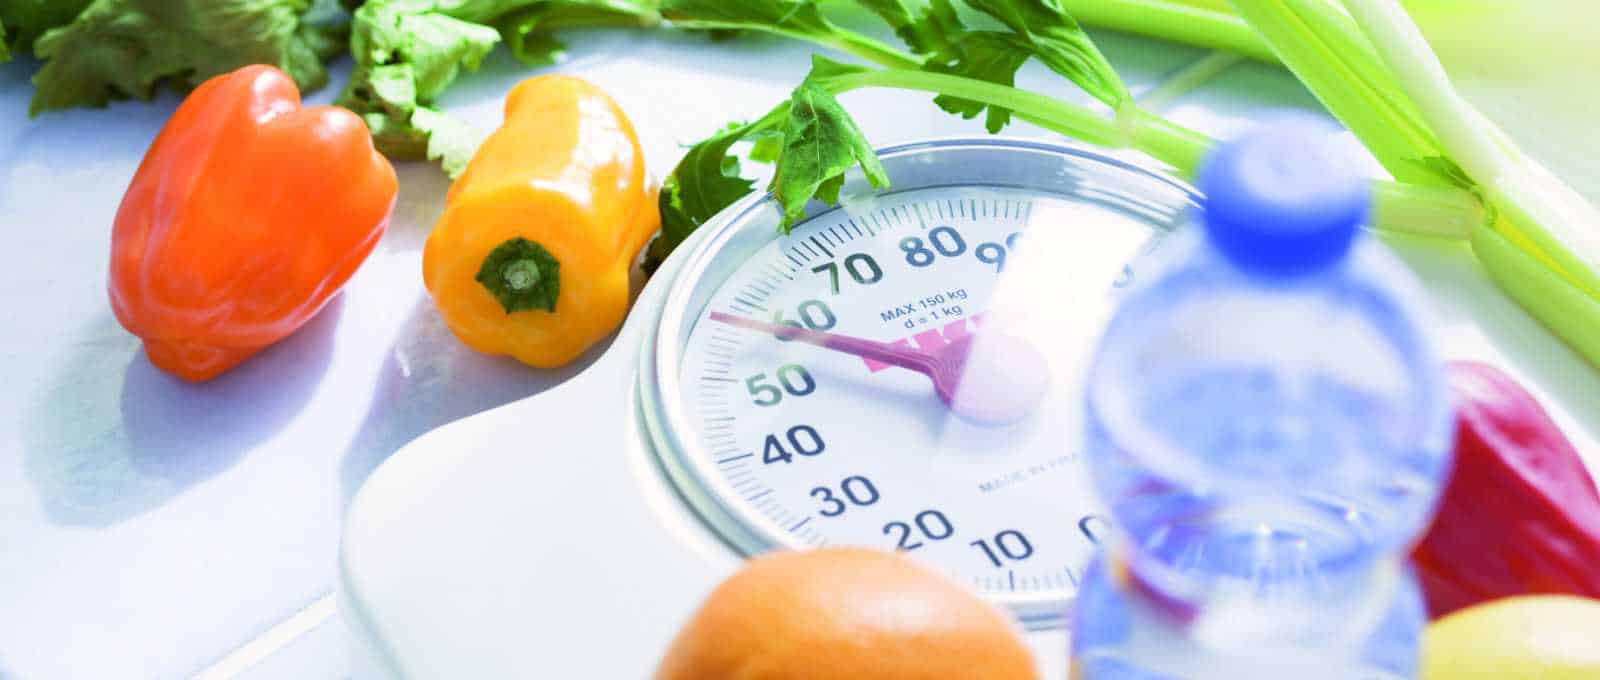 إنقاص الوزن في رمضان